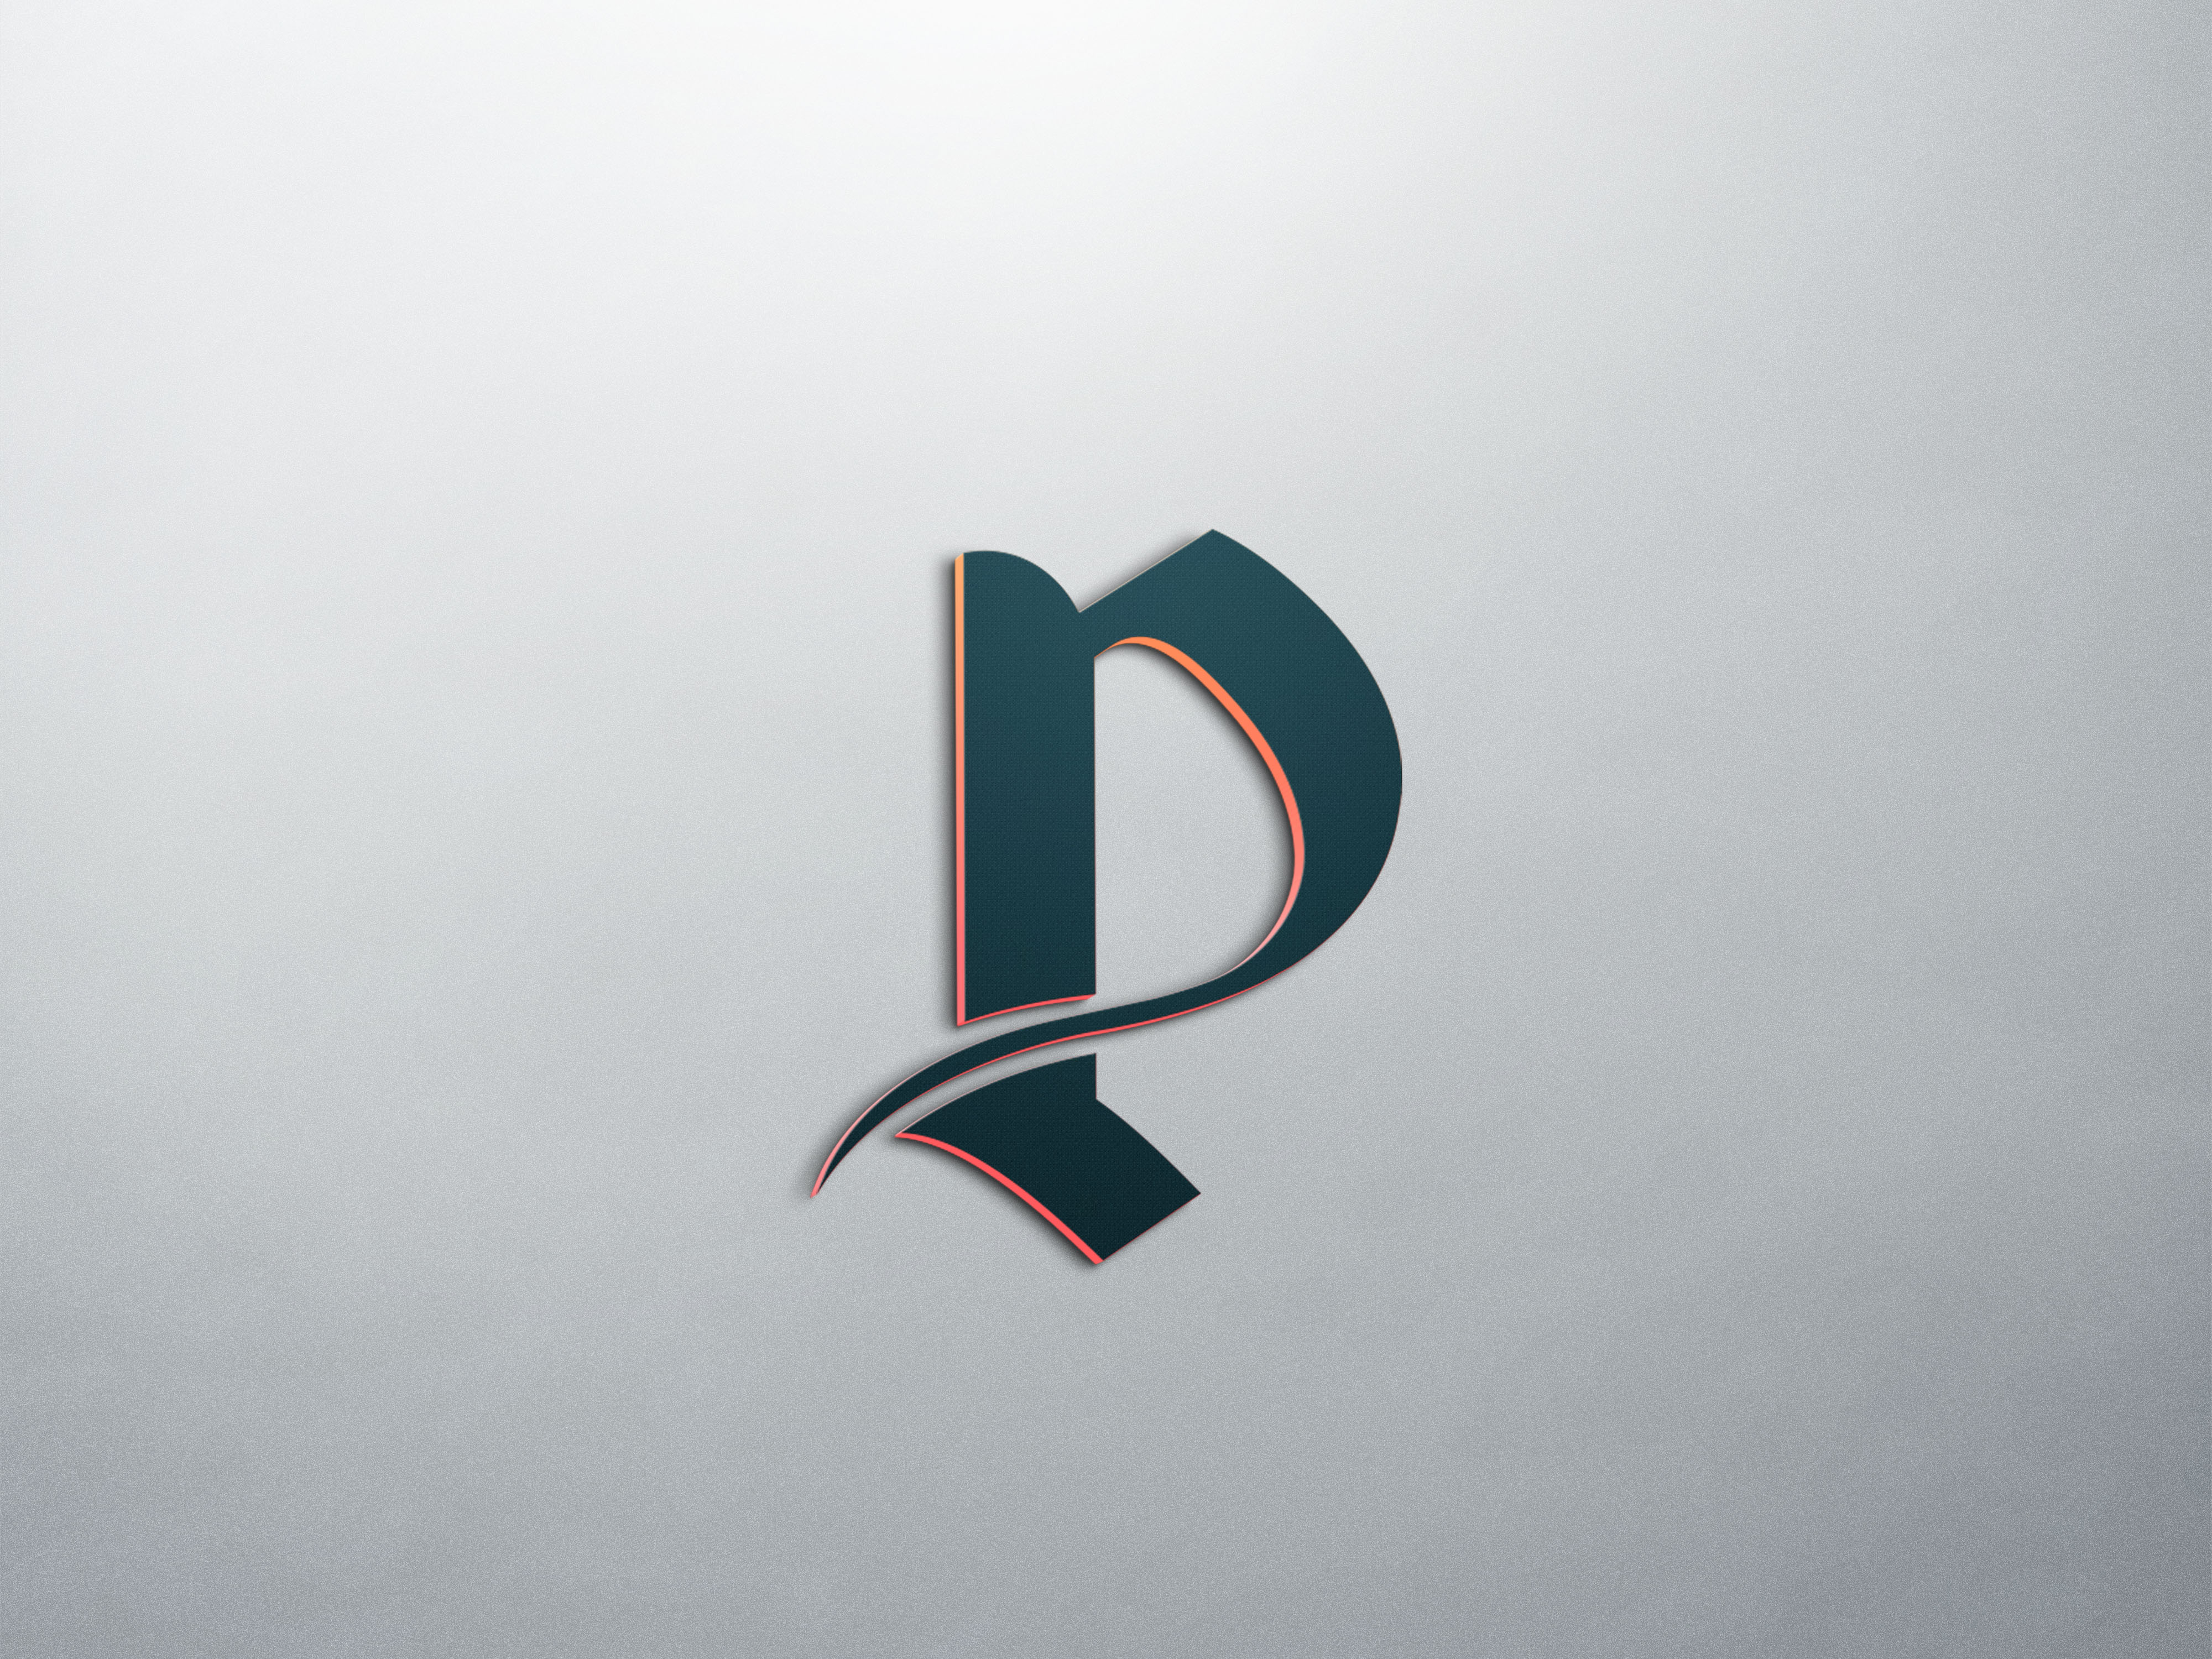 p letter logo Archives - Creative Hatti